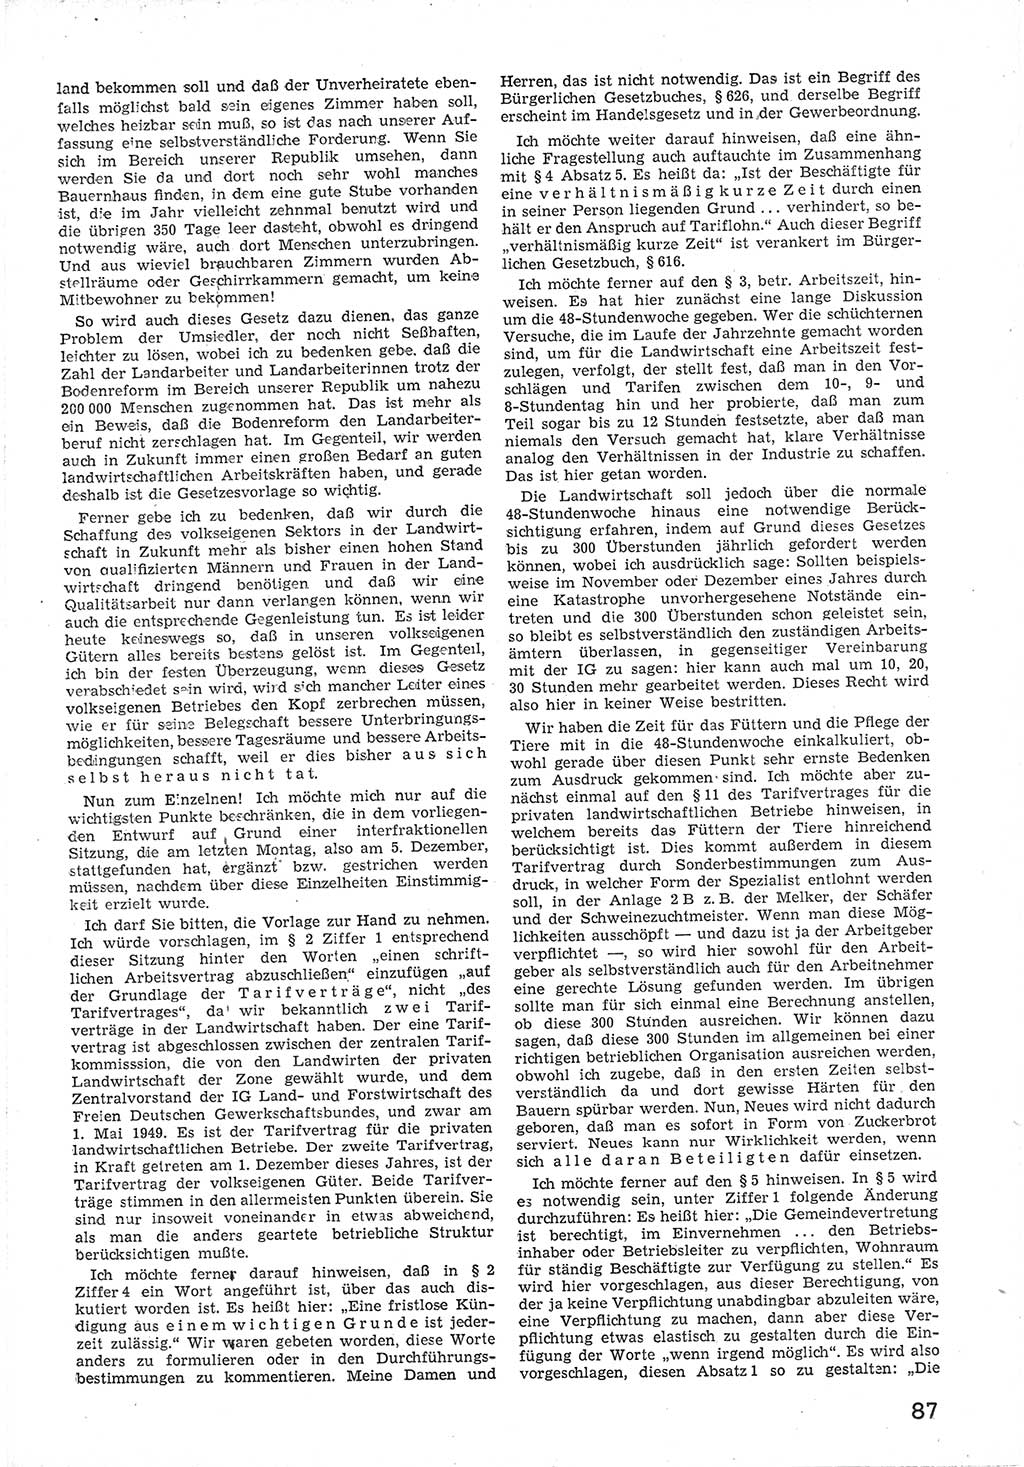 Provisorische Volkskammer (VK) der Deutschen Demokratischen Republik (DDR) 1949-1950, Dokument 99 (Prov. VK DDR 1949-1950, Dok. 99)